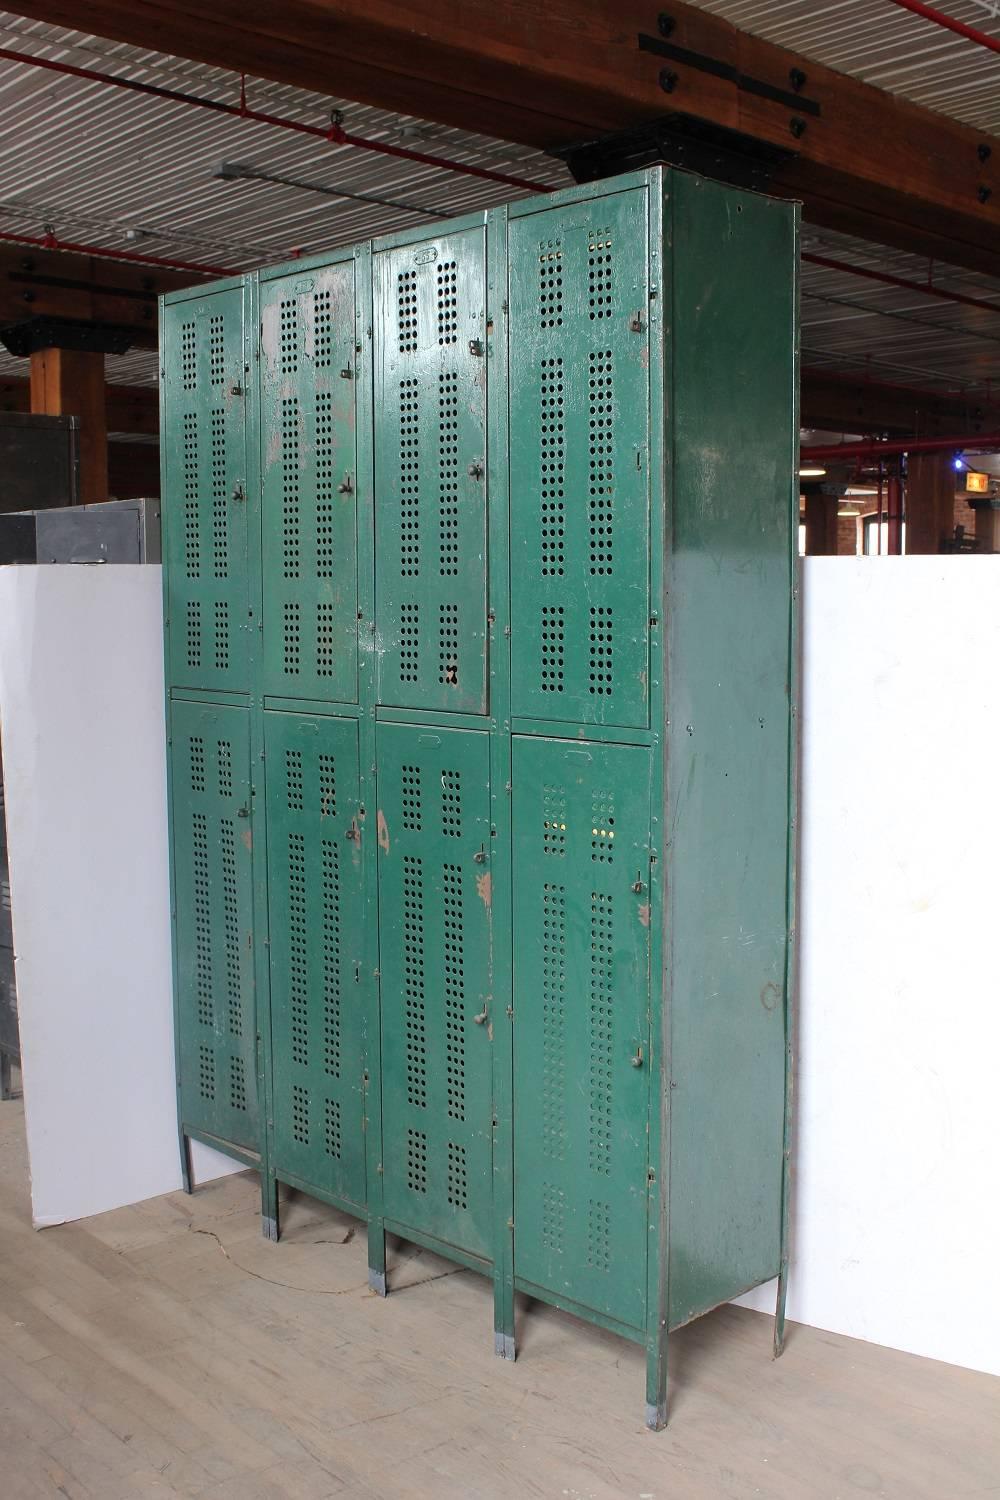 1930s American school metal lockers.